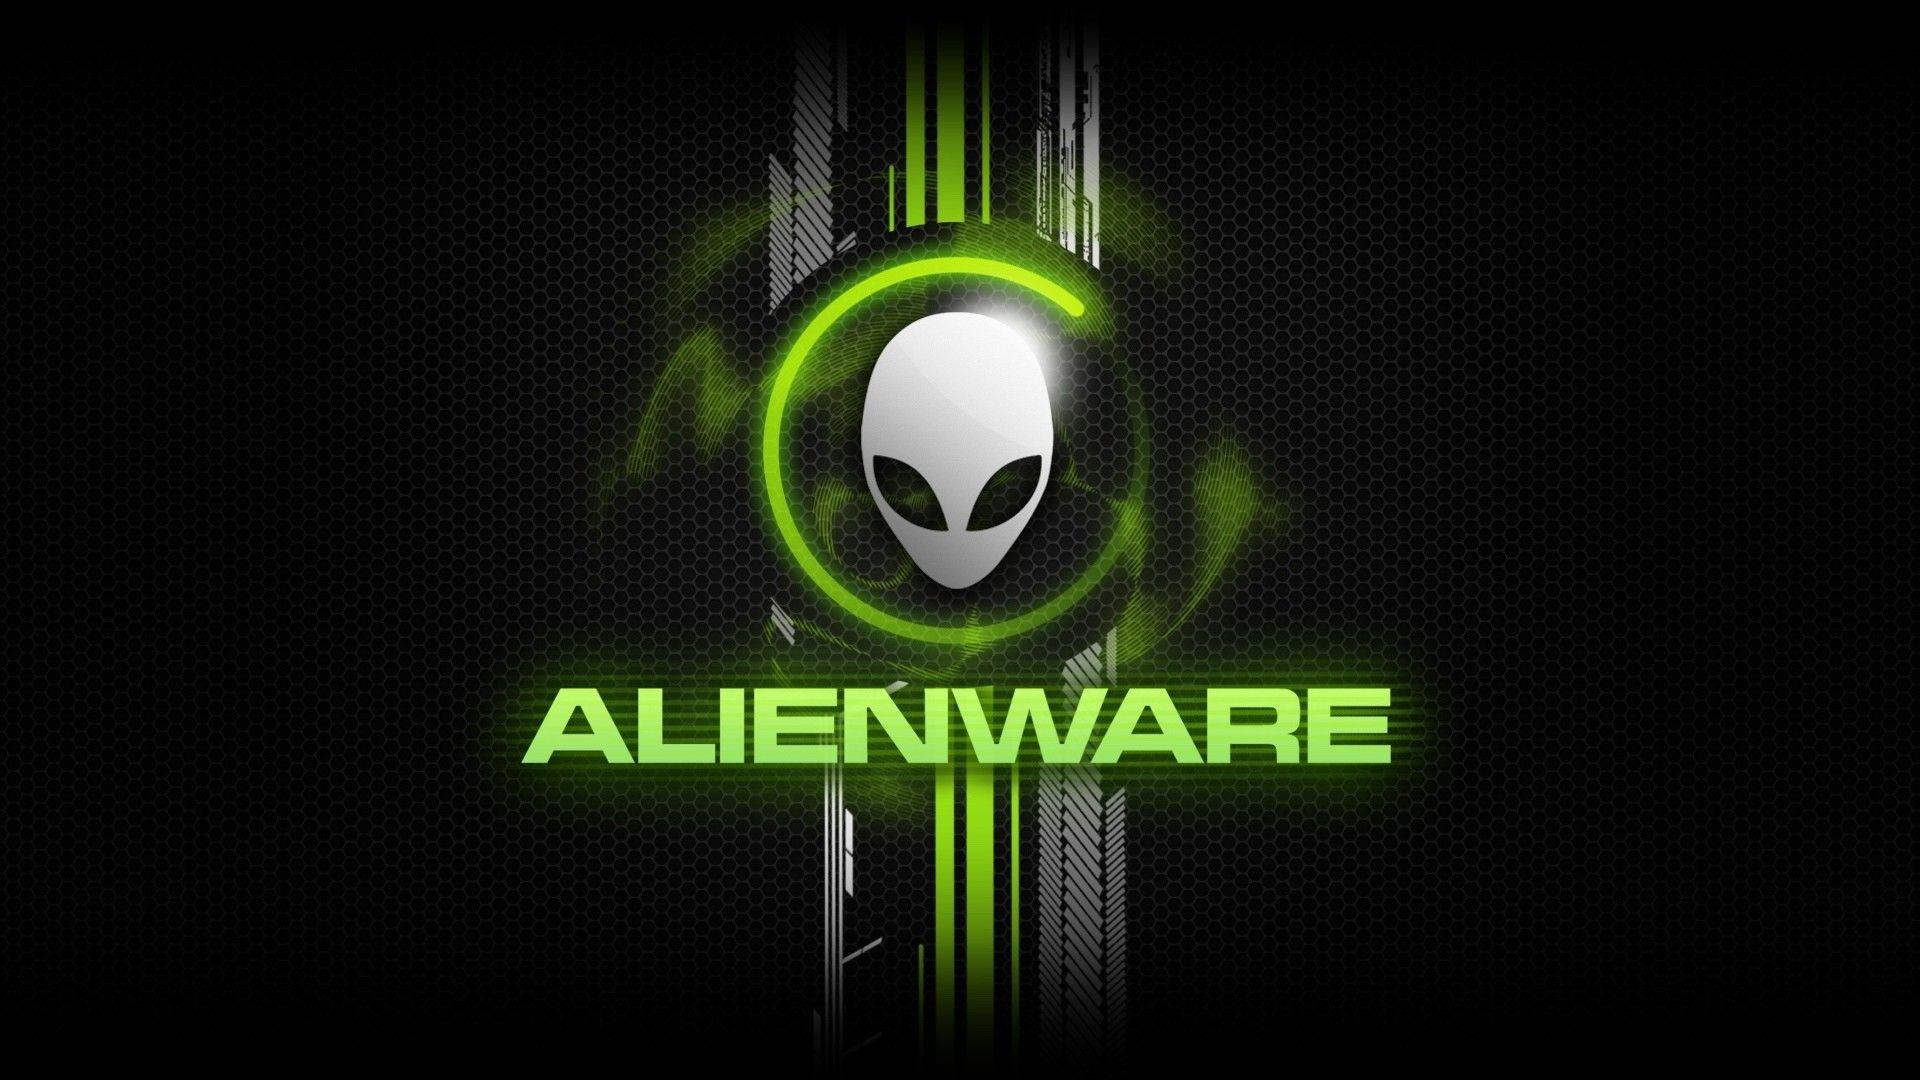 Orange Alienware Wallpapers Top Free Orange Alienware Backgrounds Wallpaperaccess 0861